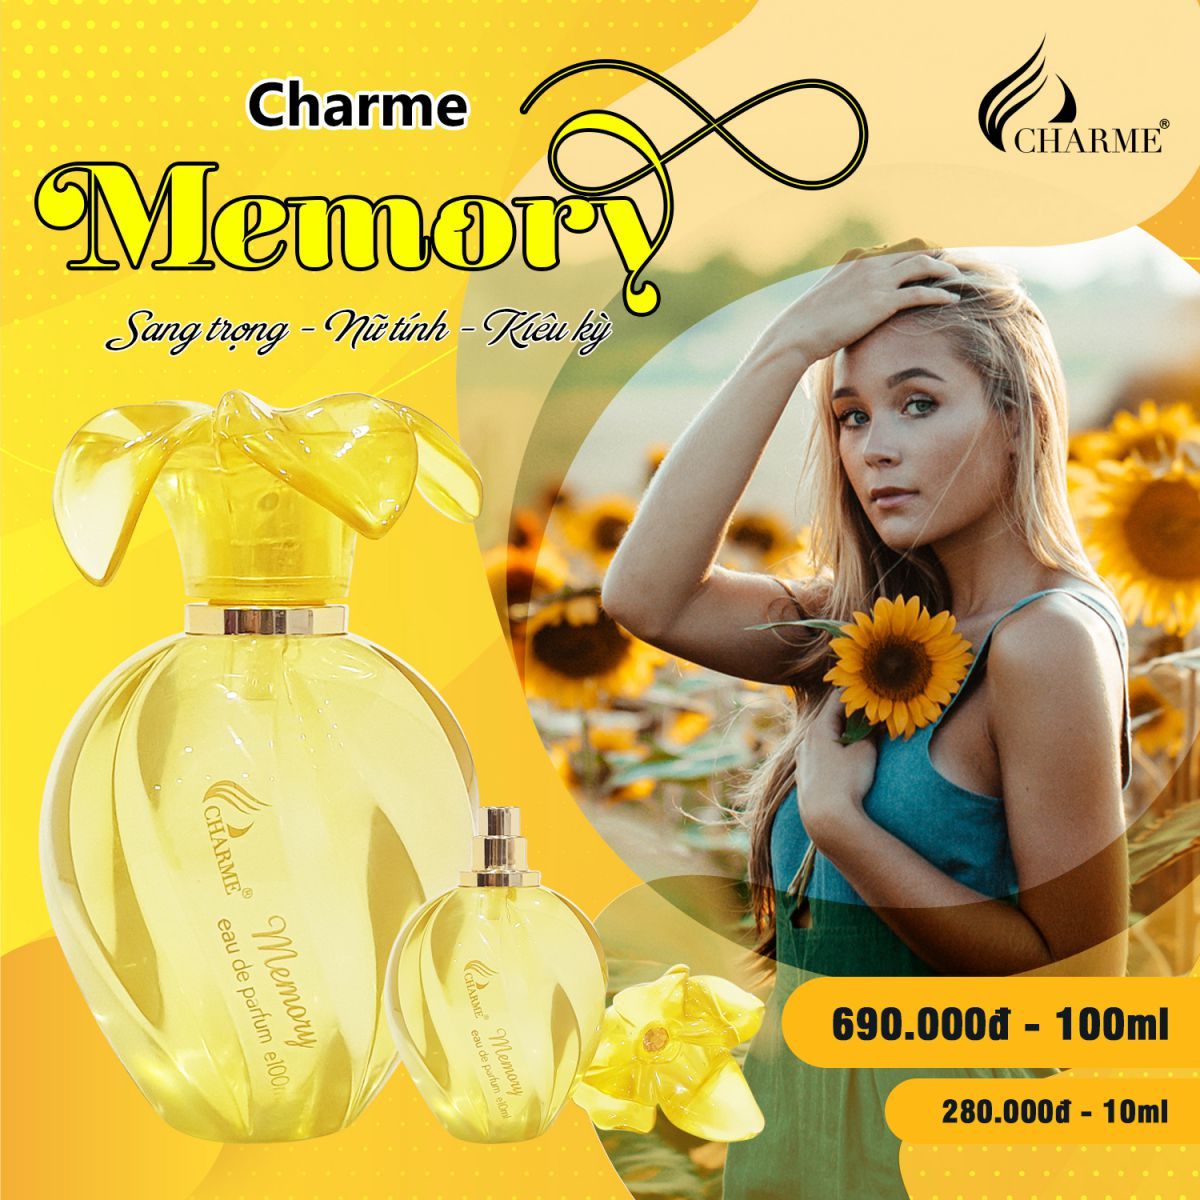 Nước hoa nữ Charme Menory mini 10ml chính hãng - 8936194692115